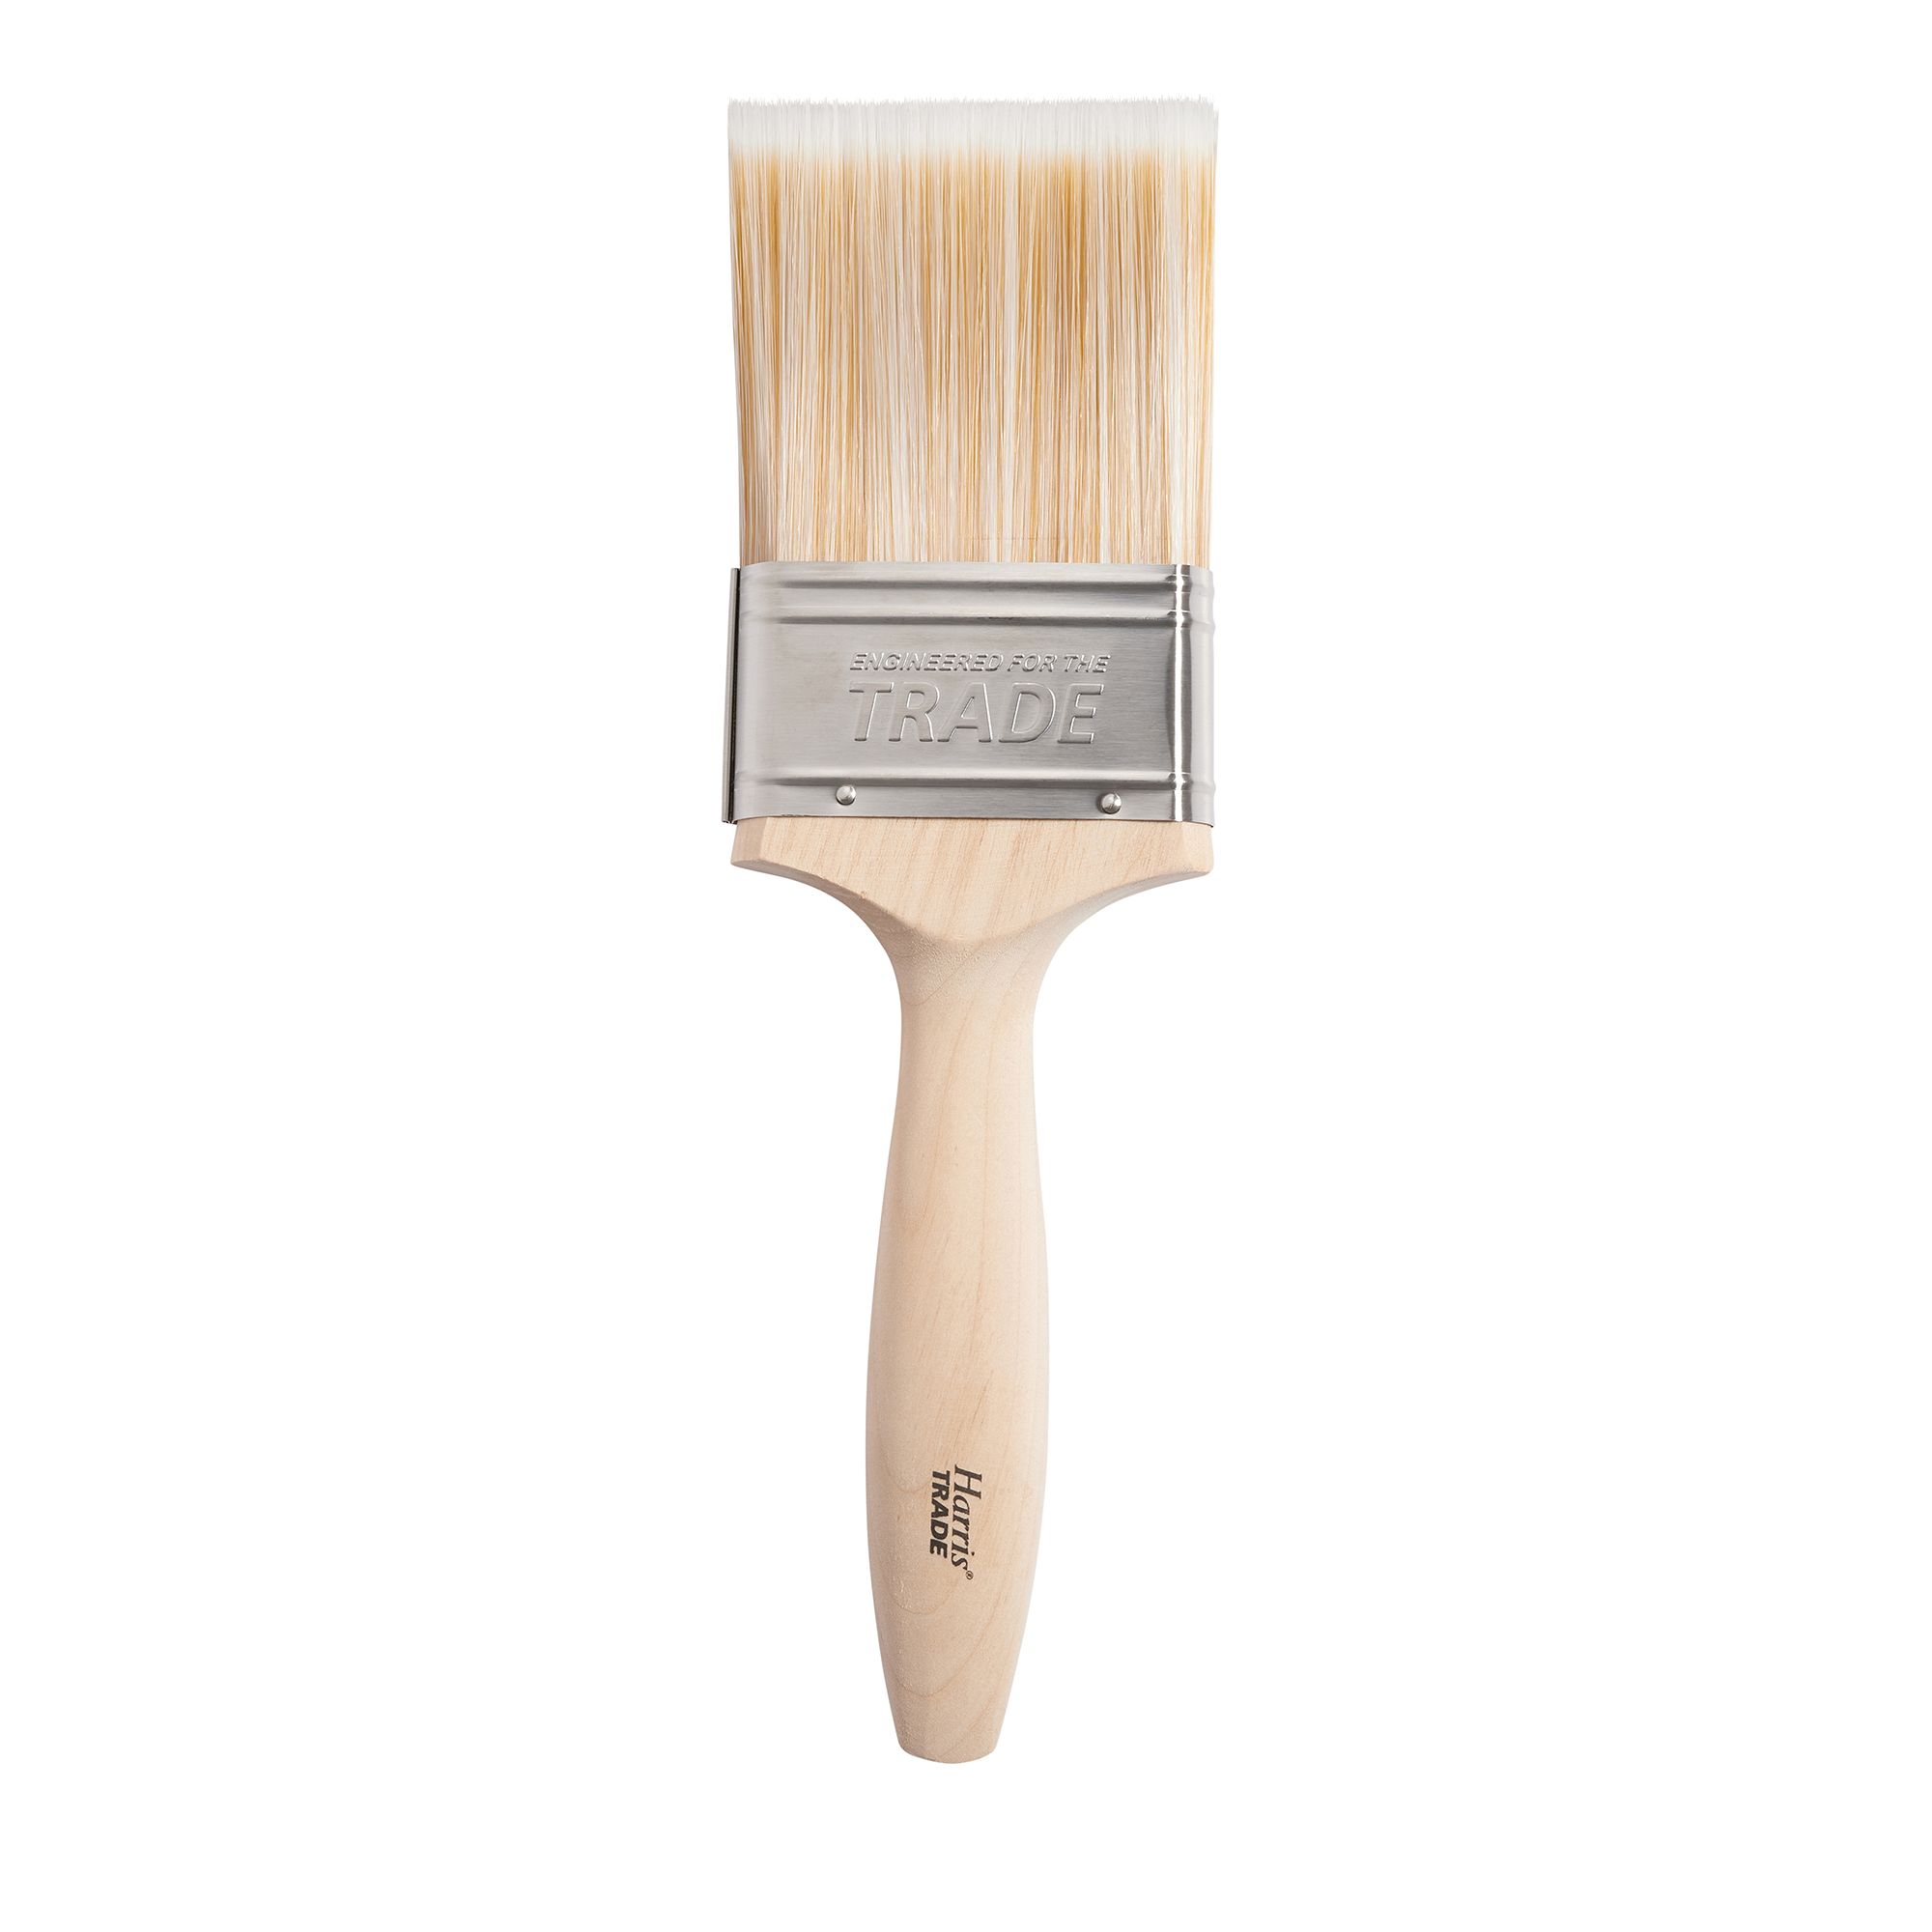 Harris Trade Emulsion & Gloss 3 Fine tip Paint brush, Pack of 1